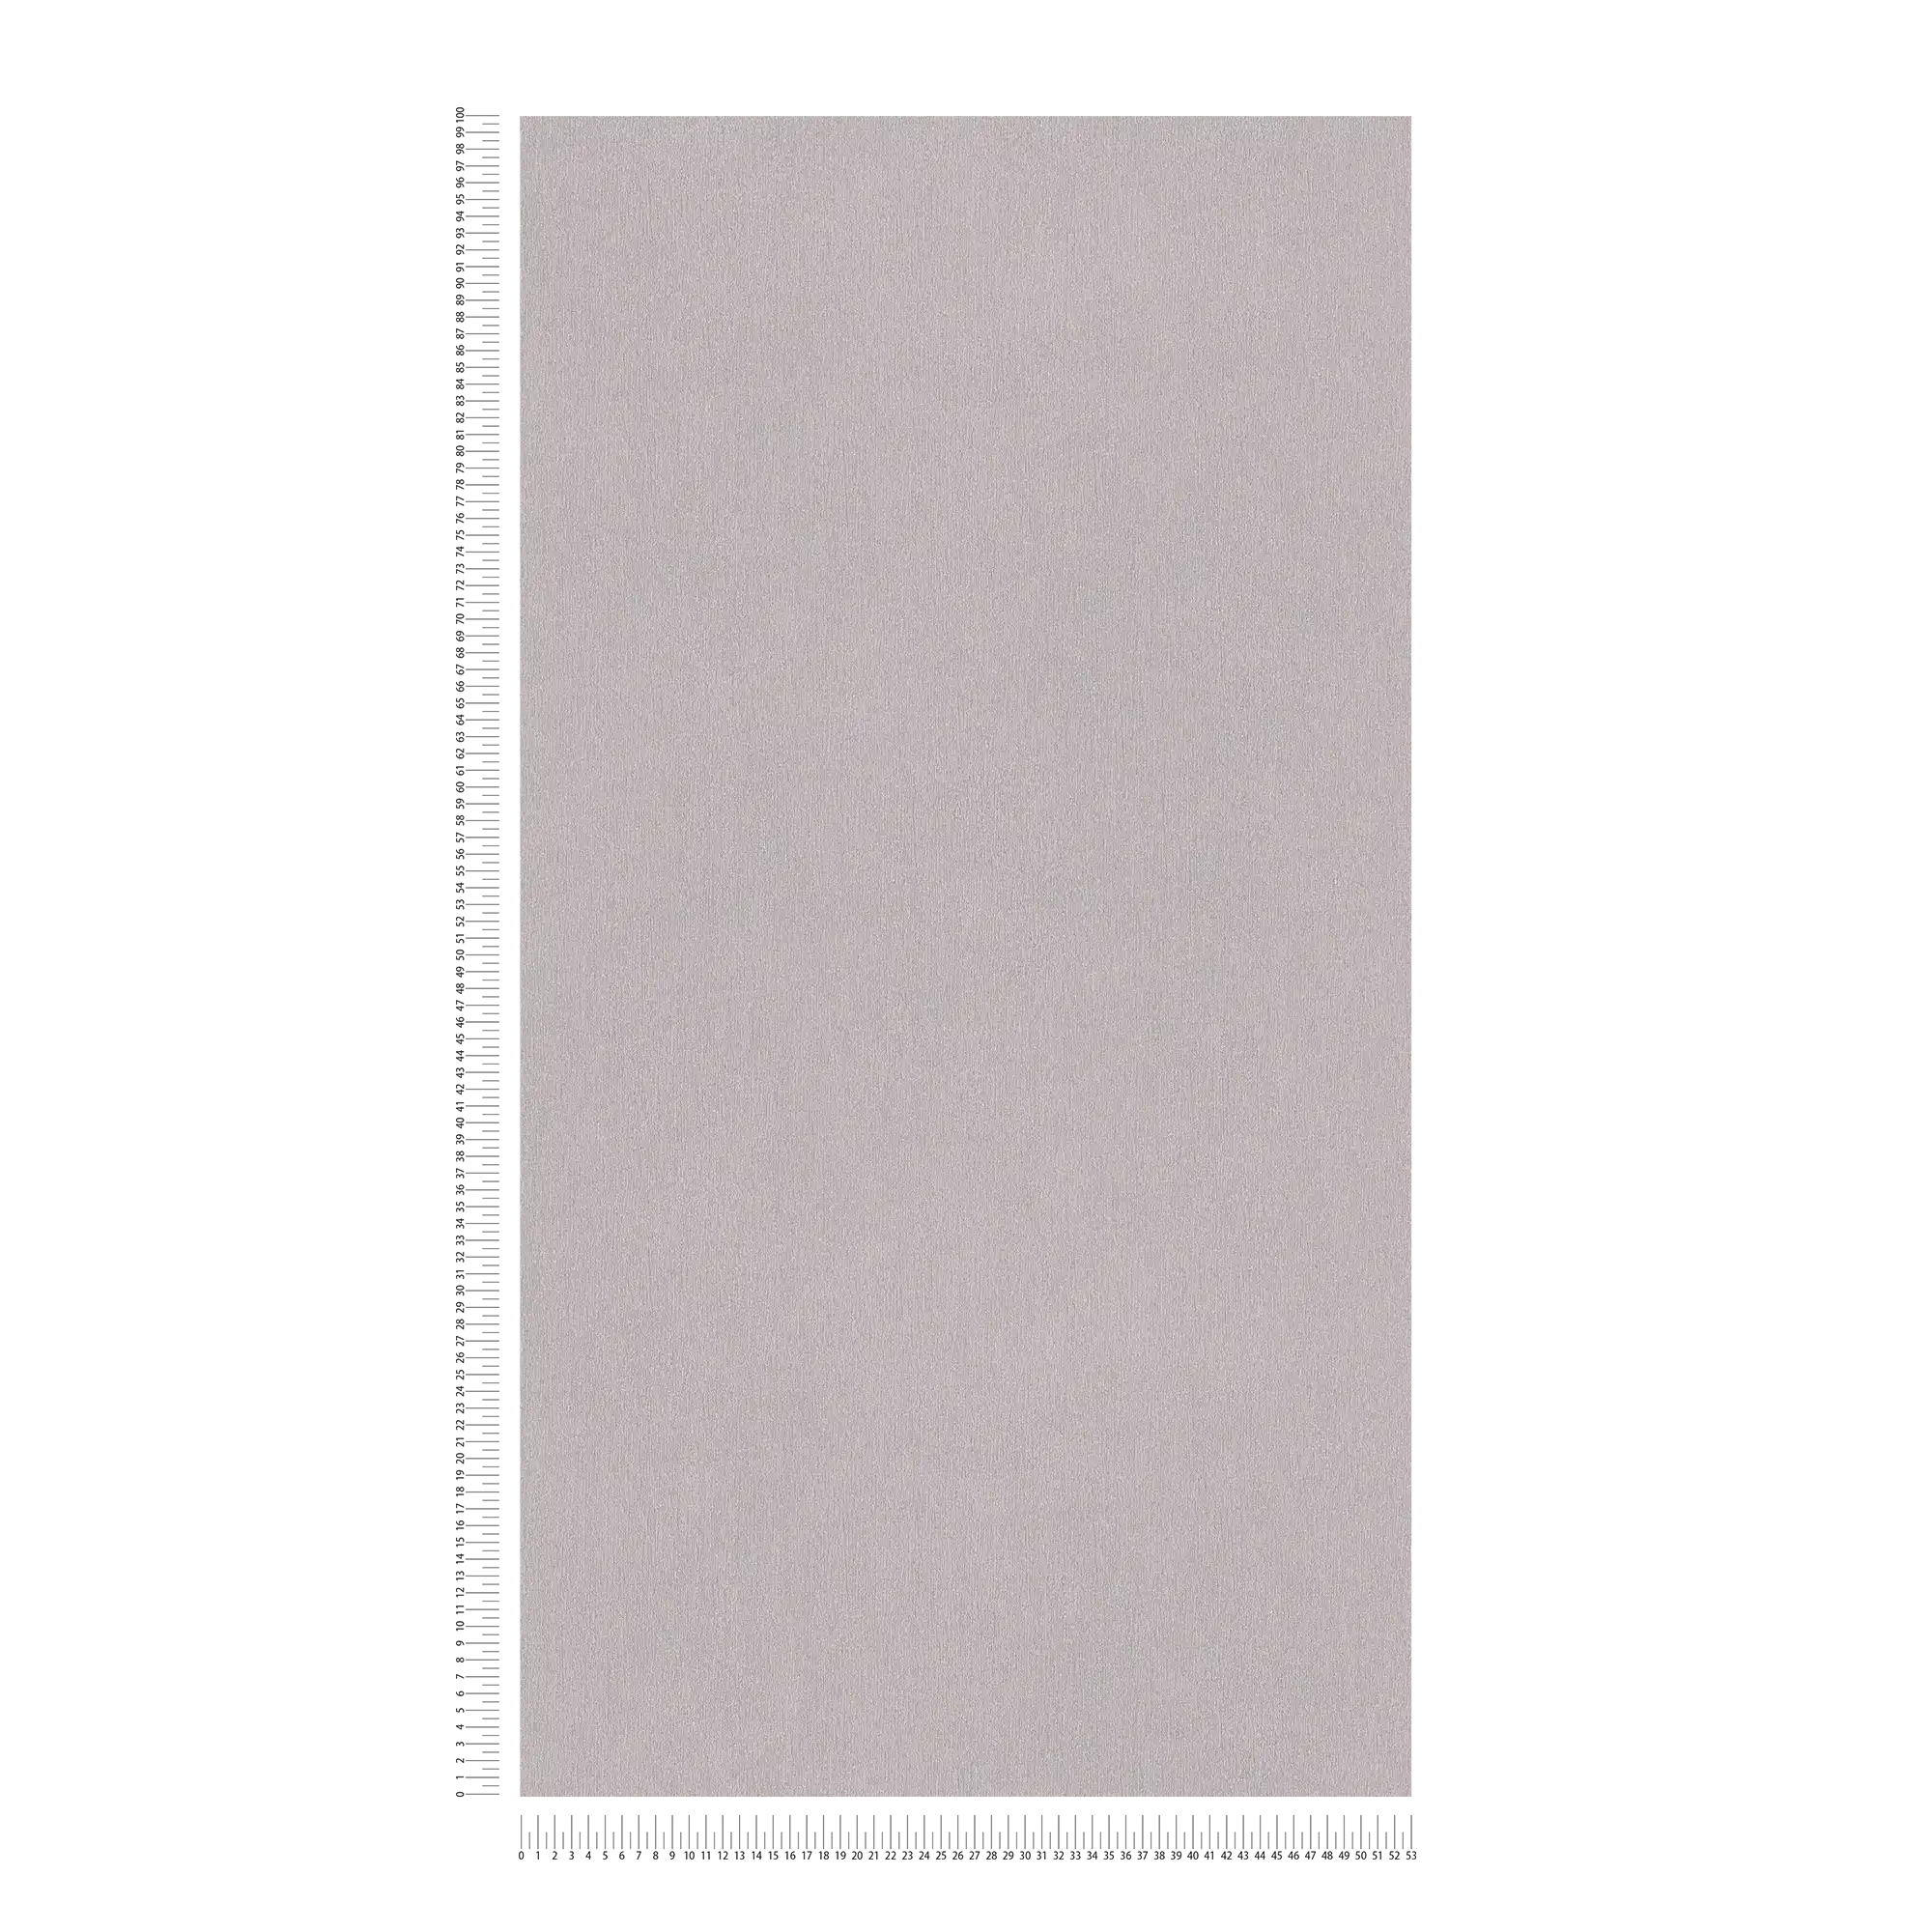             Carta da parati unitaria grigia con tratteggio a colori, tessuto non tessuto liscio
        